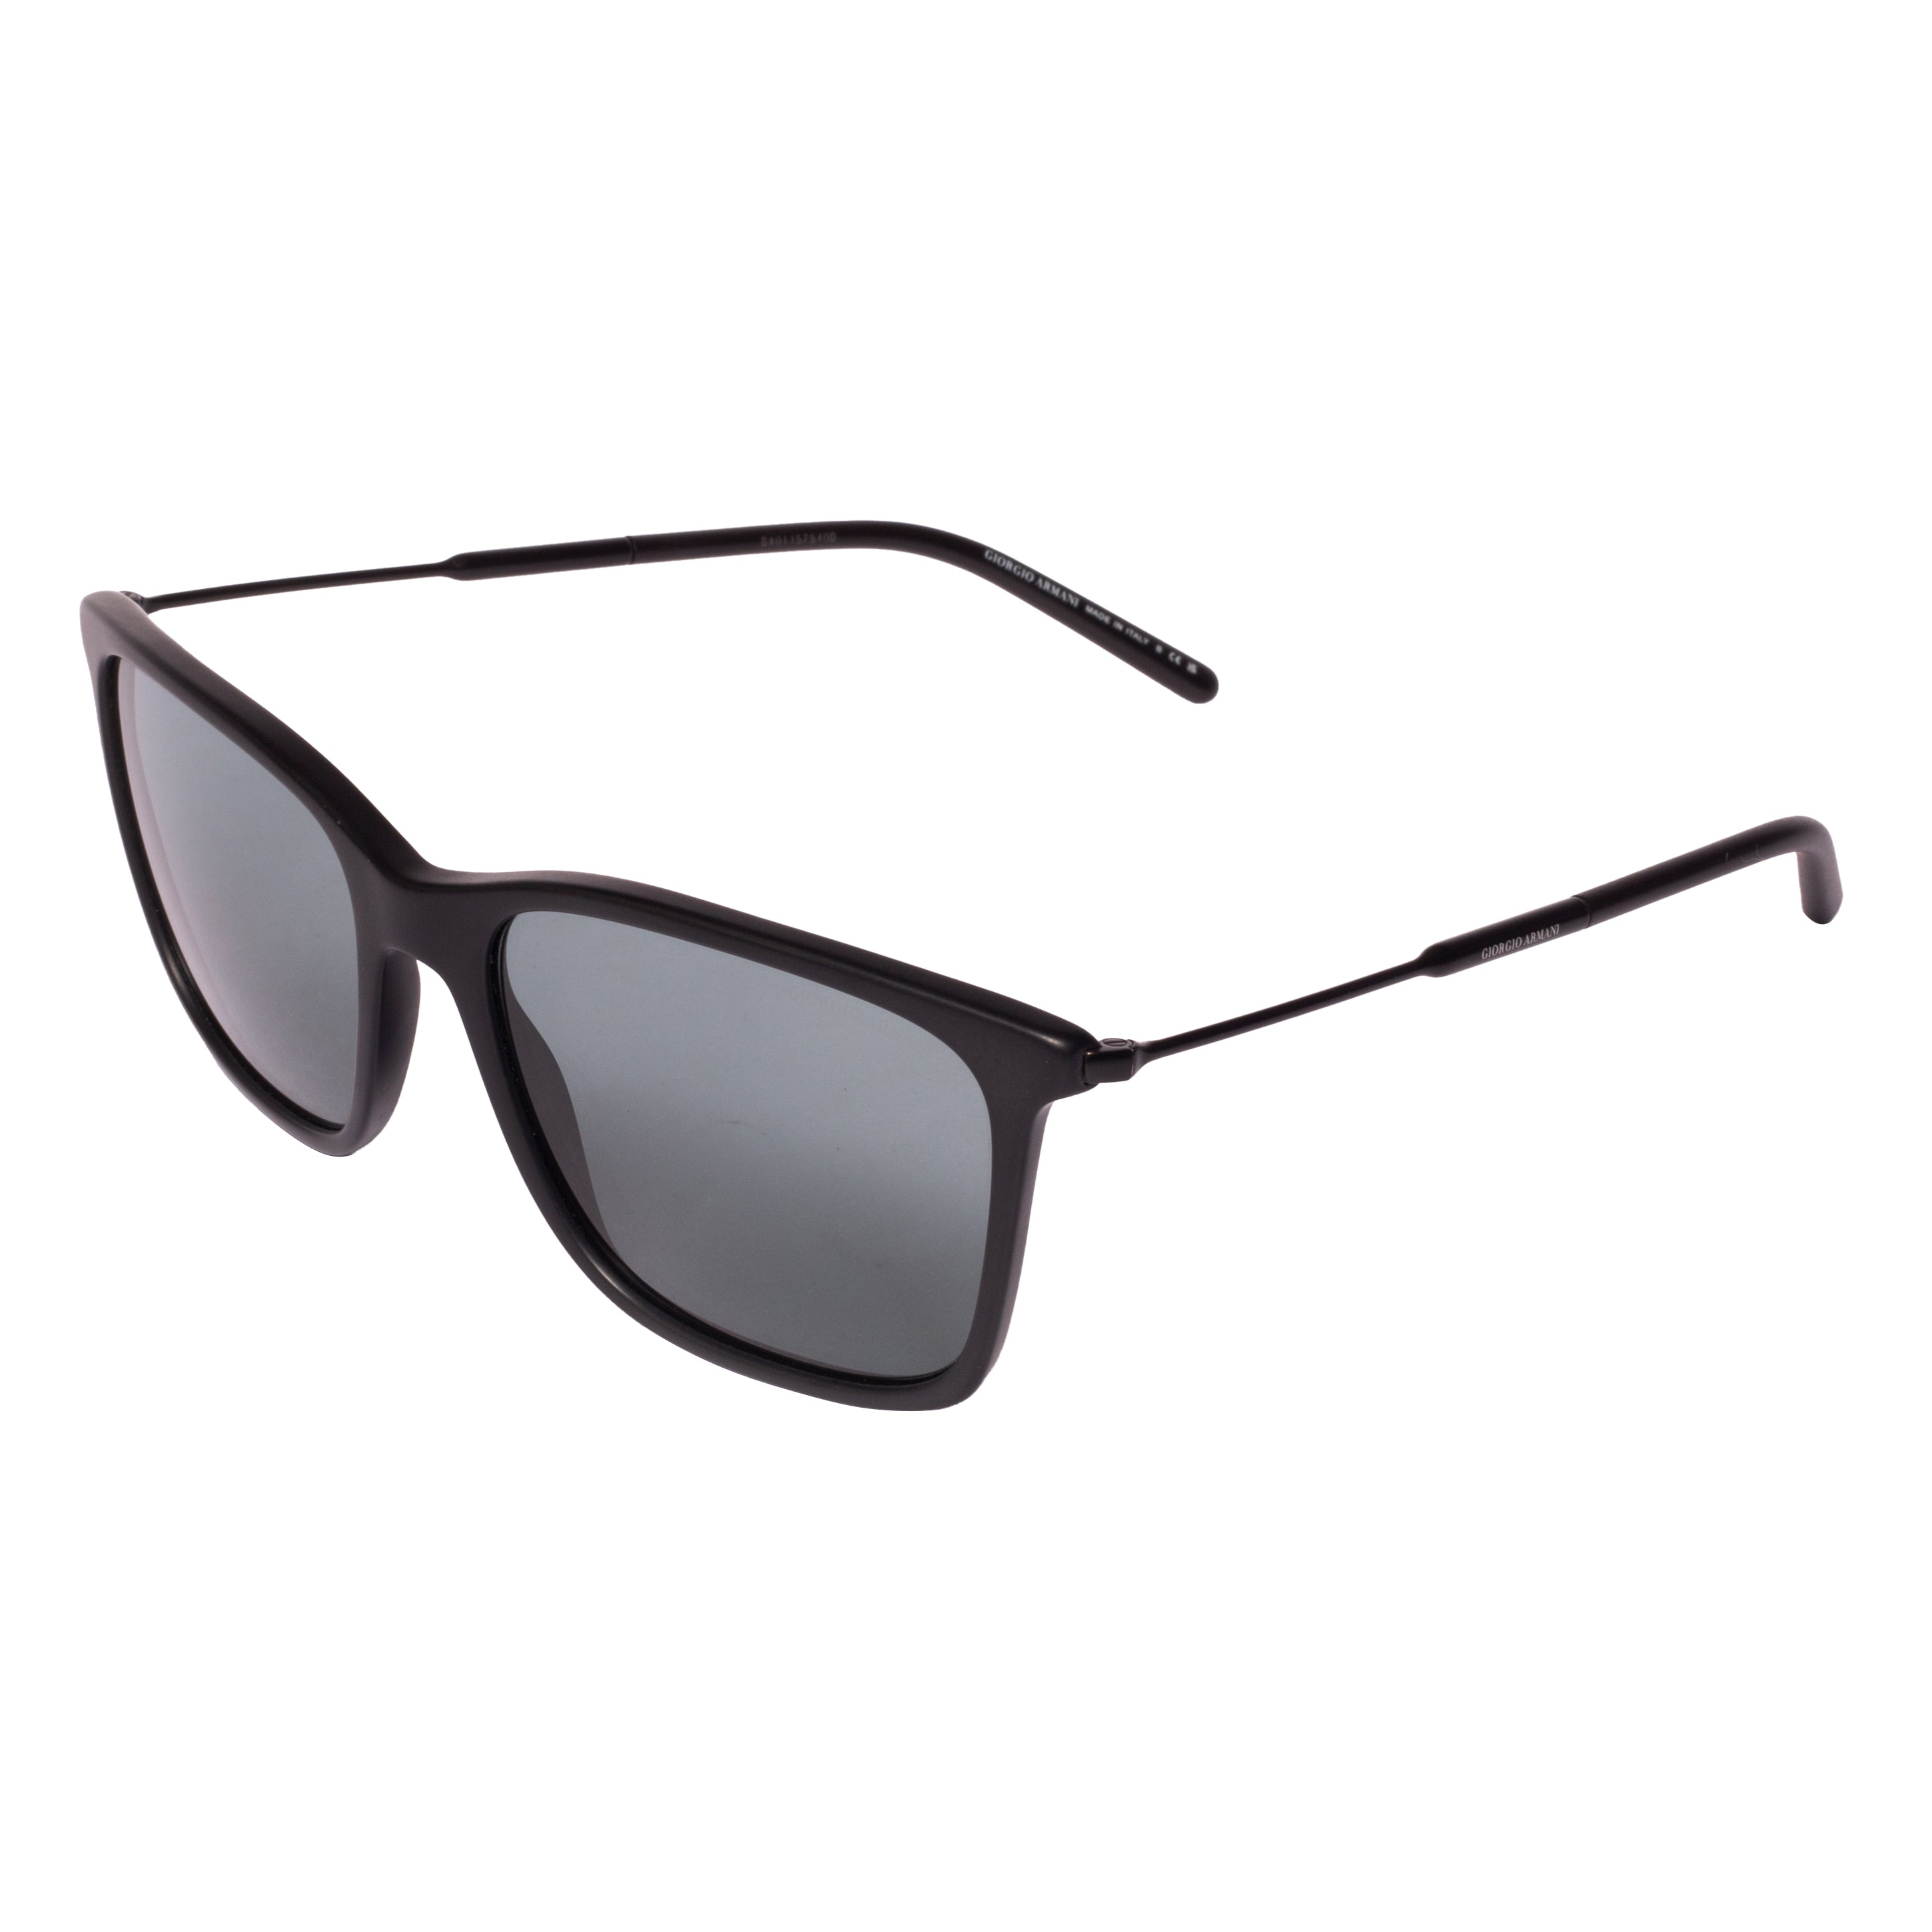 Giorgio Armani-AR 8176-57-504211 Sunglasses - Premium Sunglasses from Giorgio Armani - Just Rs. 23090! Shop now at Laxmi Opticians